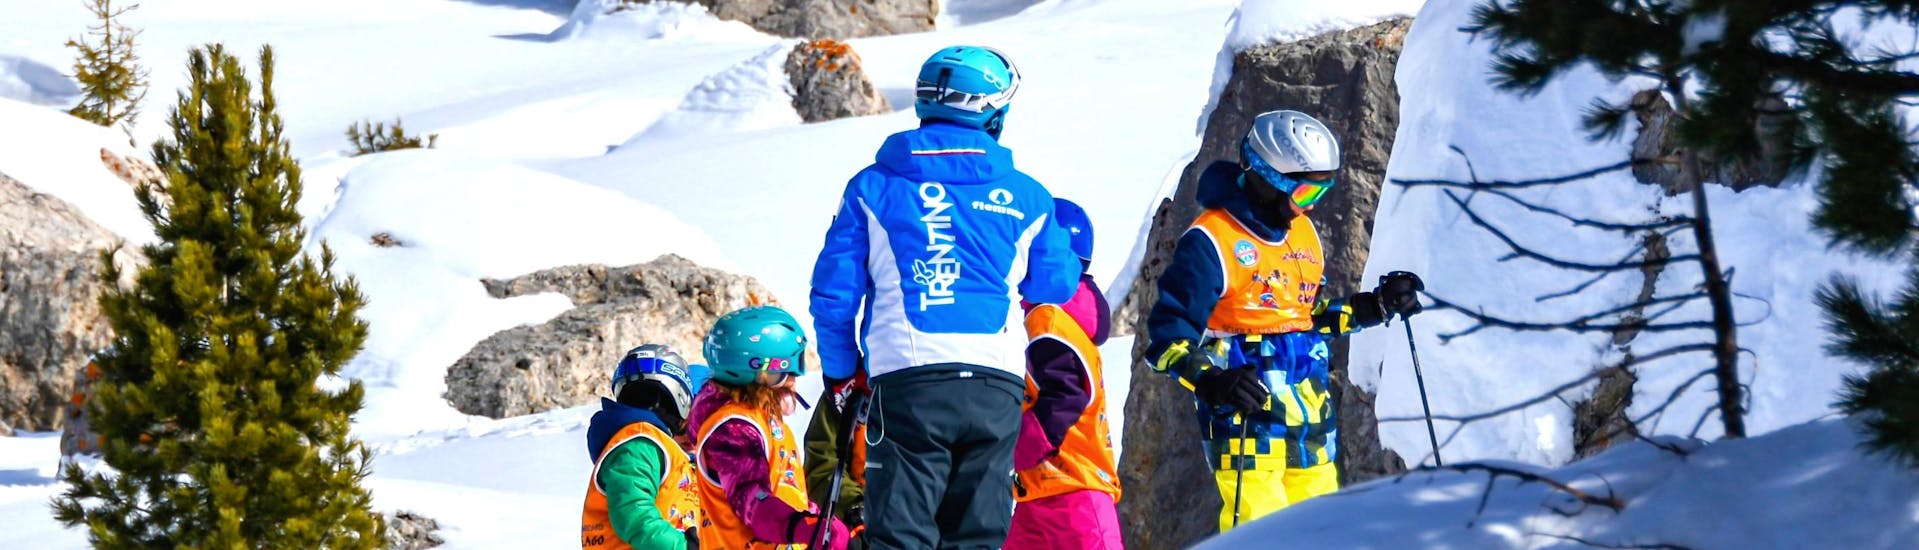 Kinder Skikurs (6-13 J.) für Alle Levels mit Scuola Sci e Snowboard Alpe di Pampeago - Hero image